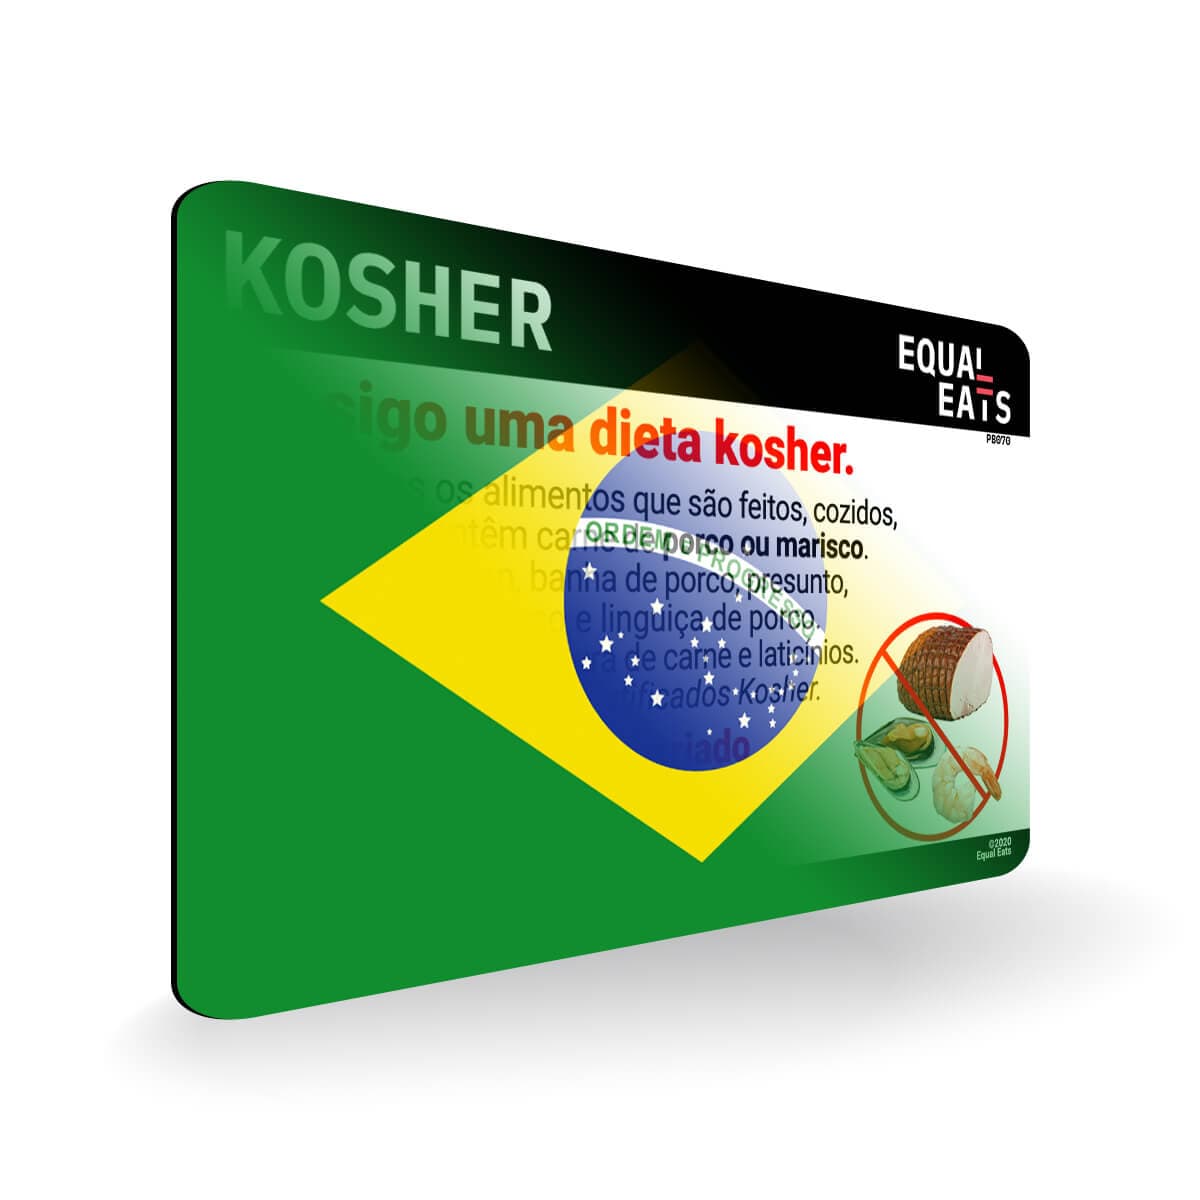 Kosher Diet in Portuguese. Kosher Card for Brazil